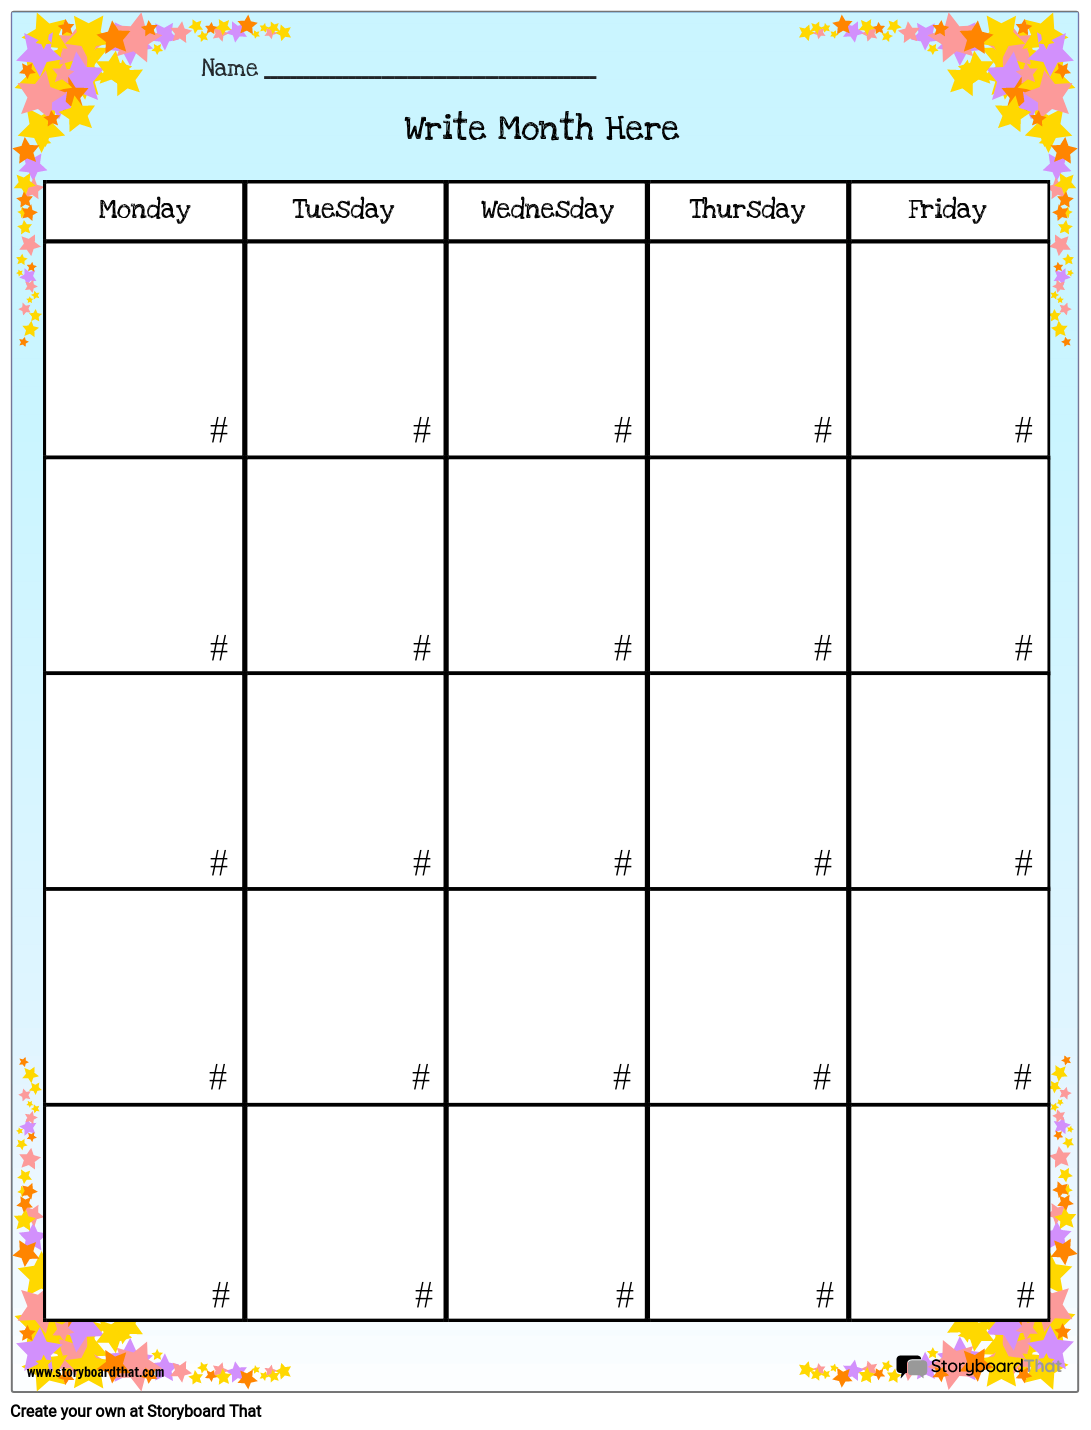 Шаблоны Календарей для Печати — Бесплатный Конструктор Календарей